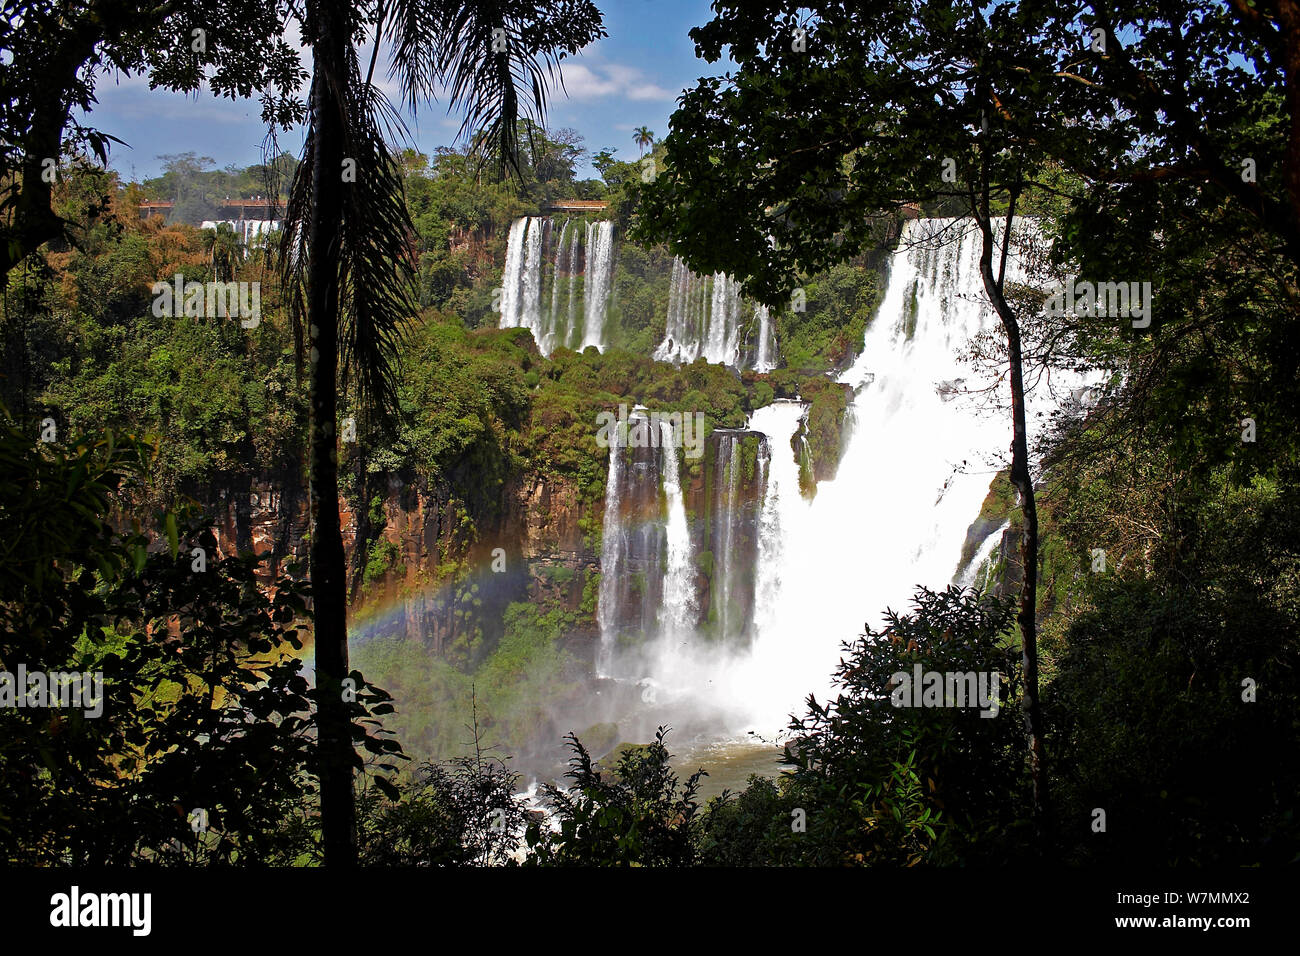 Iguazu waterfalls, Iguacu National Park, Argentina. October 2008. Stock Photo